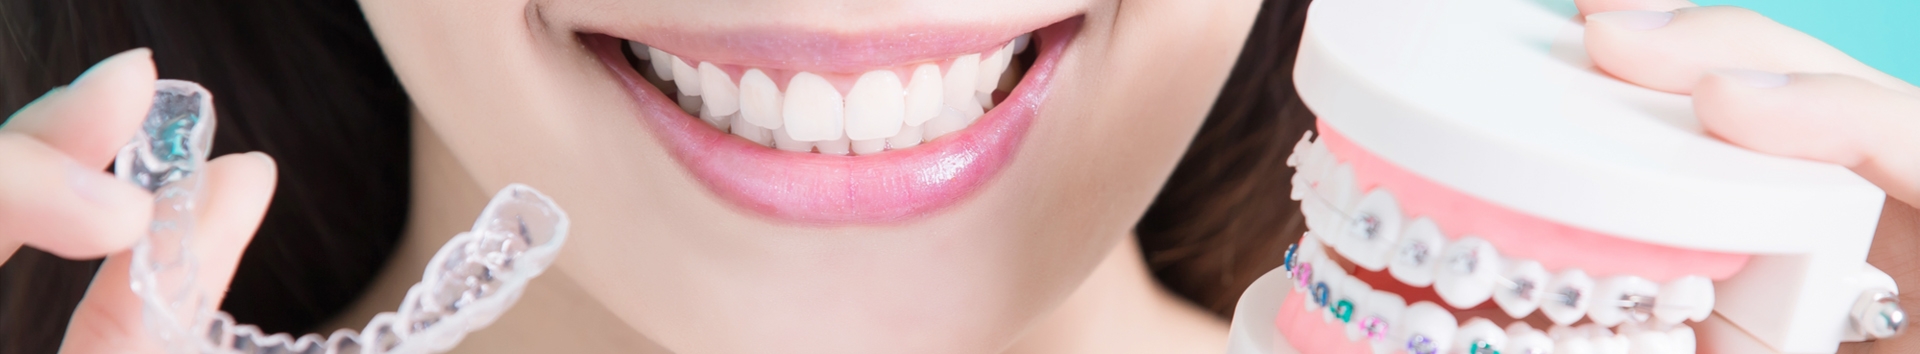 O que é Ortodontia convencional, estética, lingual e preventiva?